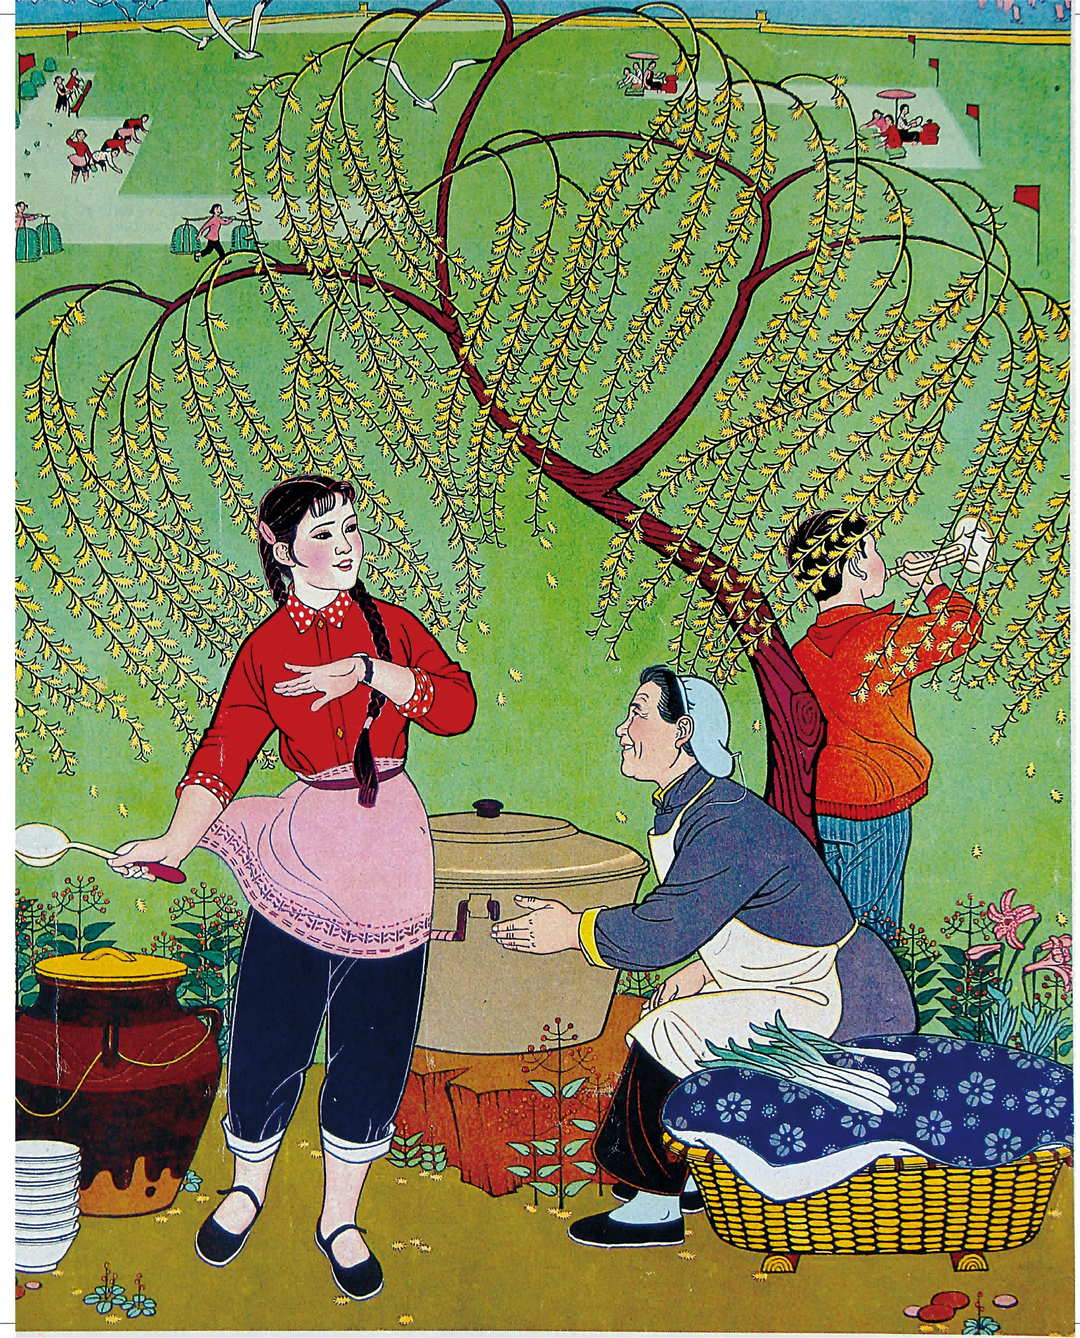 著名艺术家李百钧的年画故事④——《红云岗》《一月八》《催》的创作源起